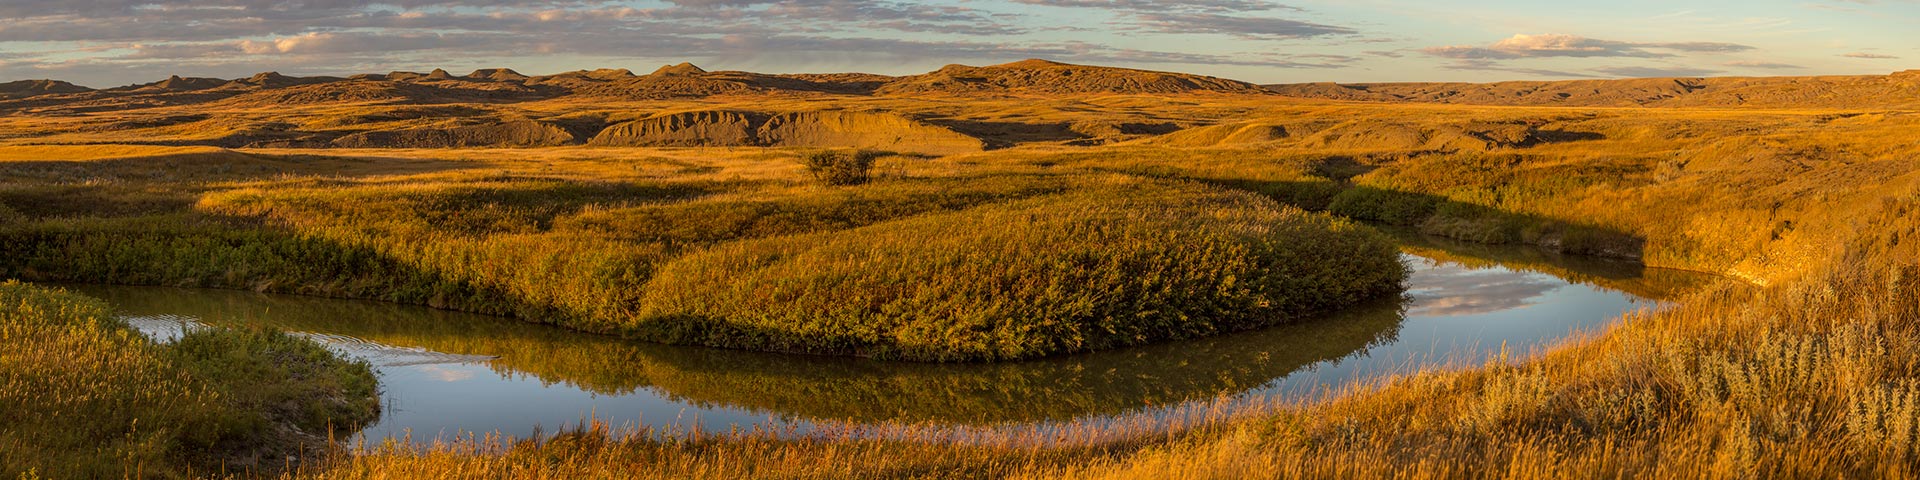 Paysage pittoresque en septembre, au Bloc Ouest, dans le parc national des Prairies.